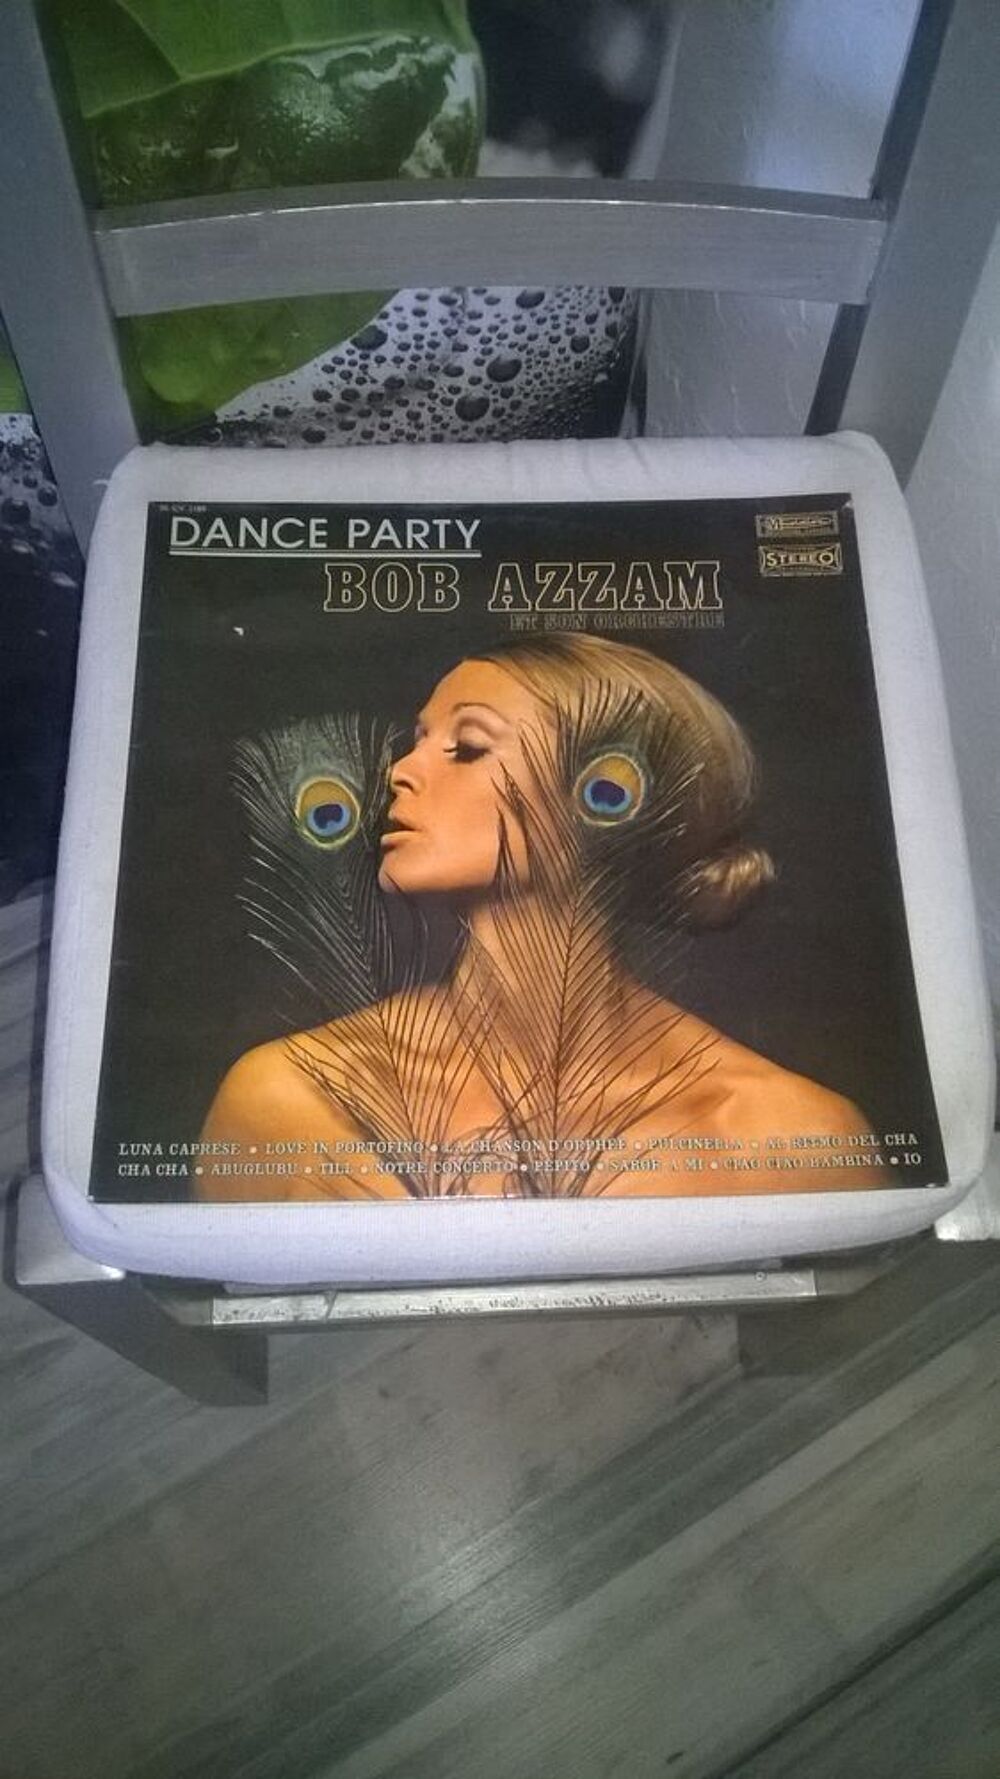 Vinyle Bob Azzam Et Son Orchestre
Dance Party
1971
Excell CD et vinyles